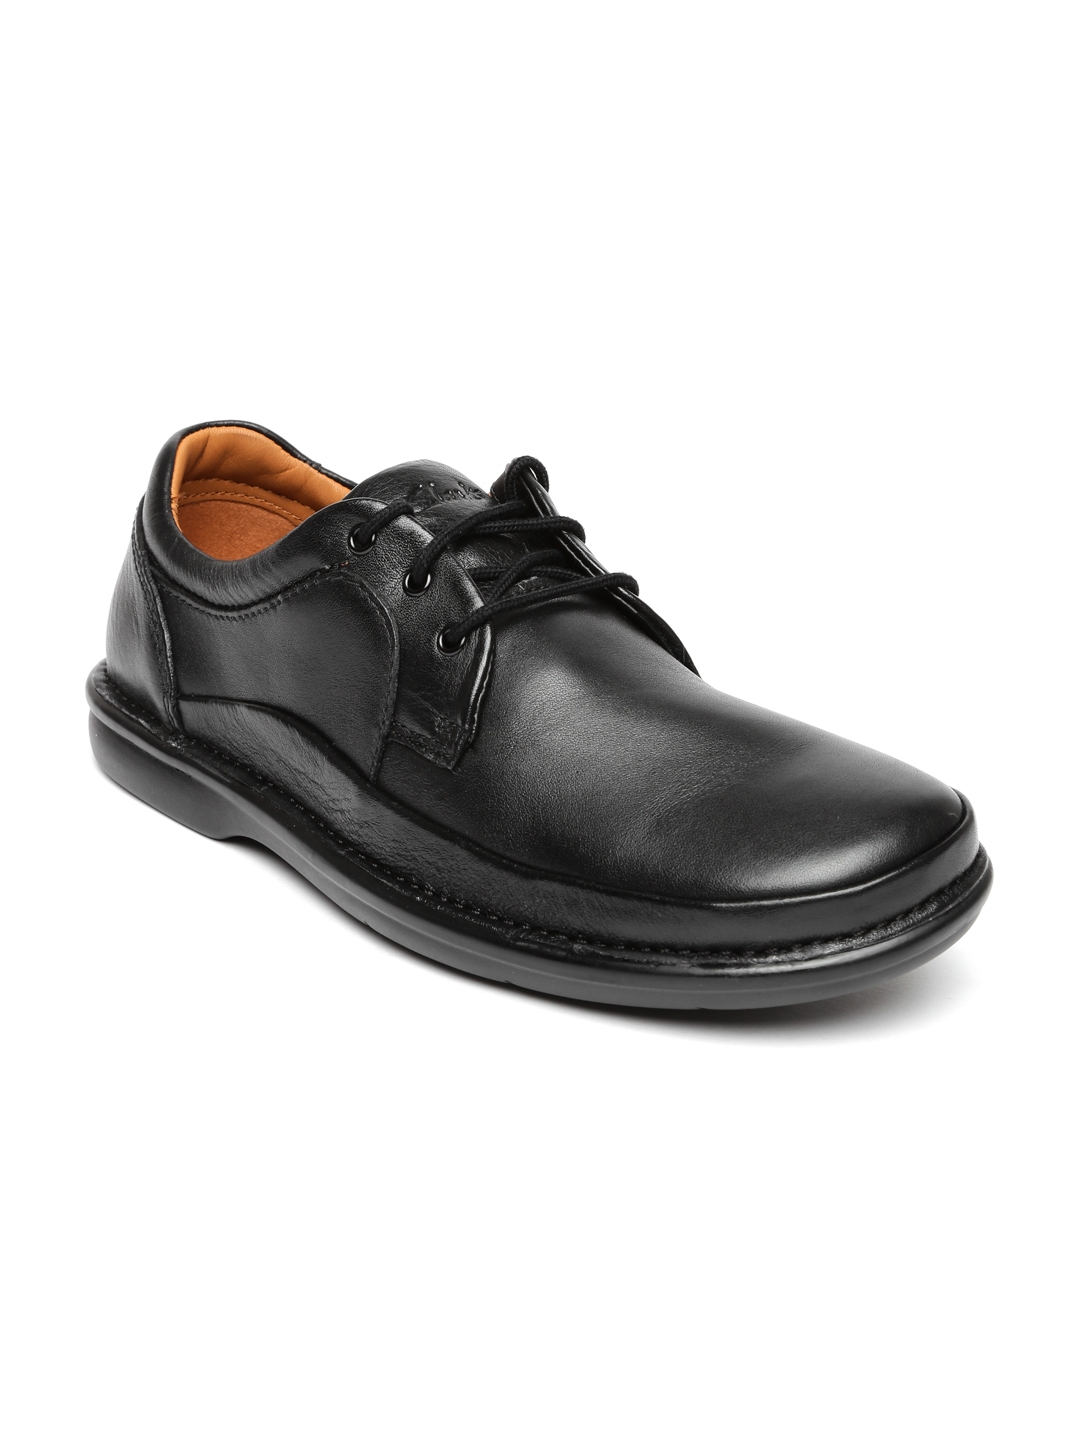 Buy Clarks Men Black Leather Formal Shoes - Formal Shoes for Men ...